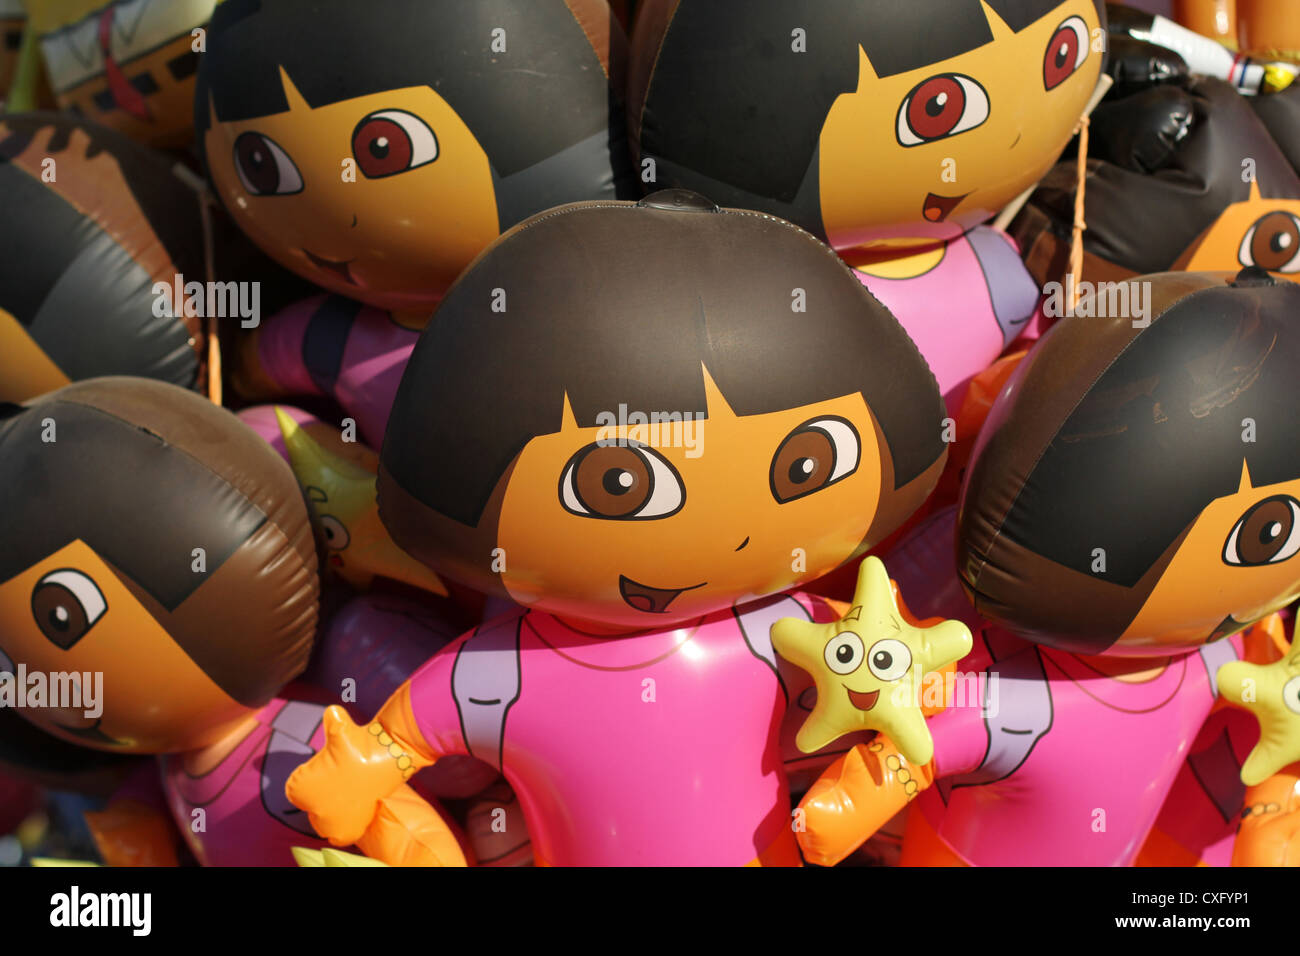 A of Dora the Explorer balloons Stock Photo Alamy